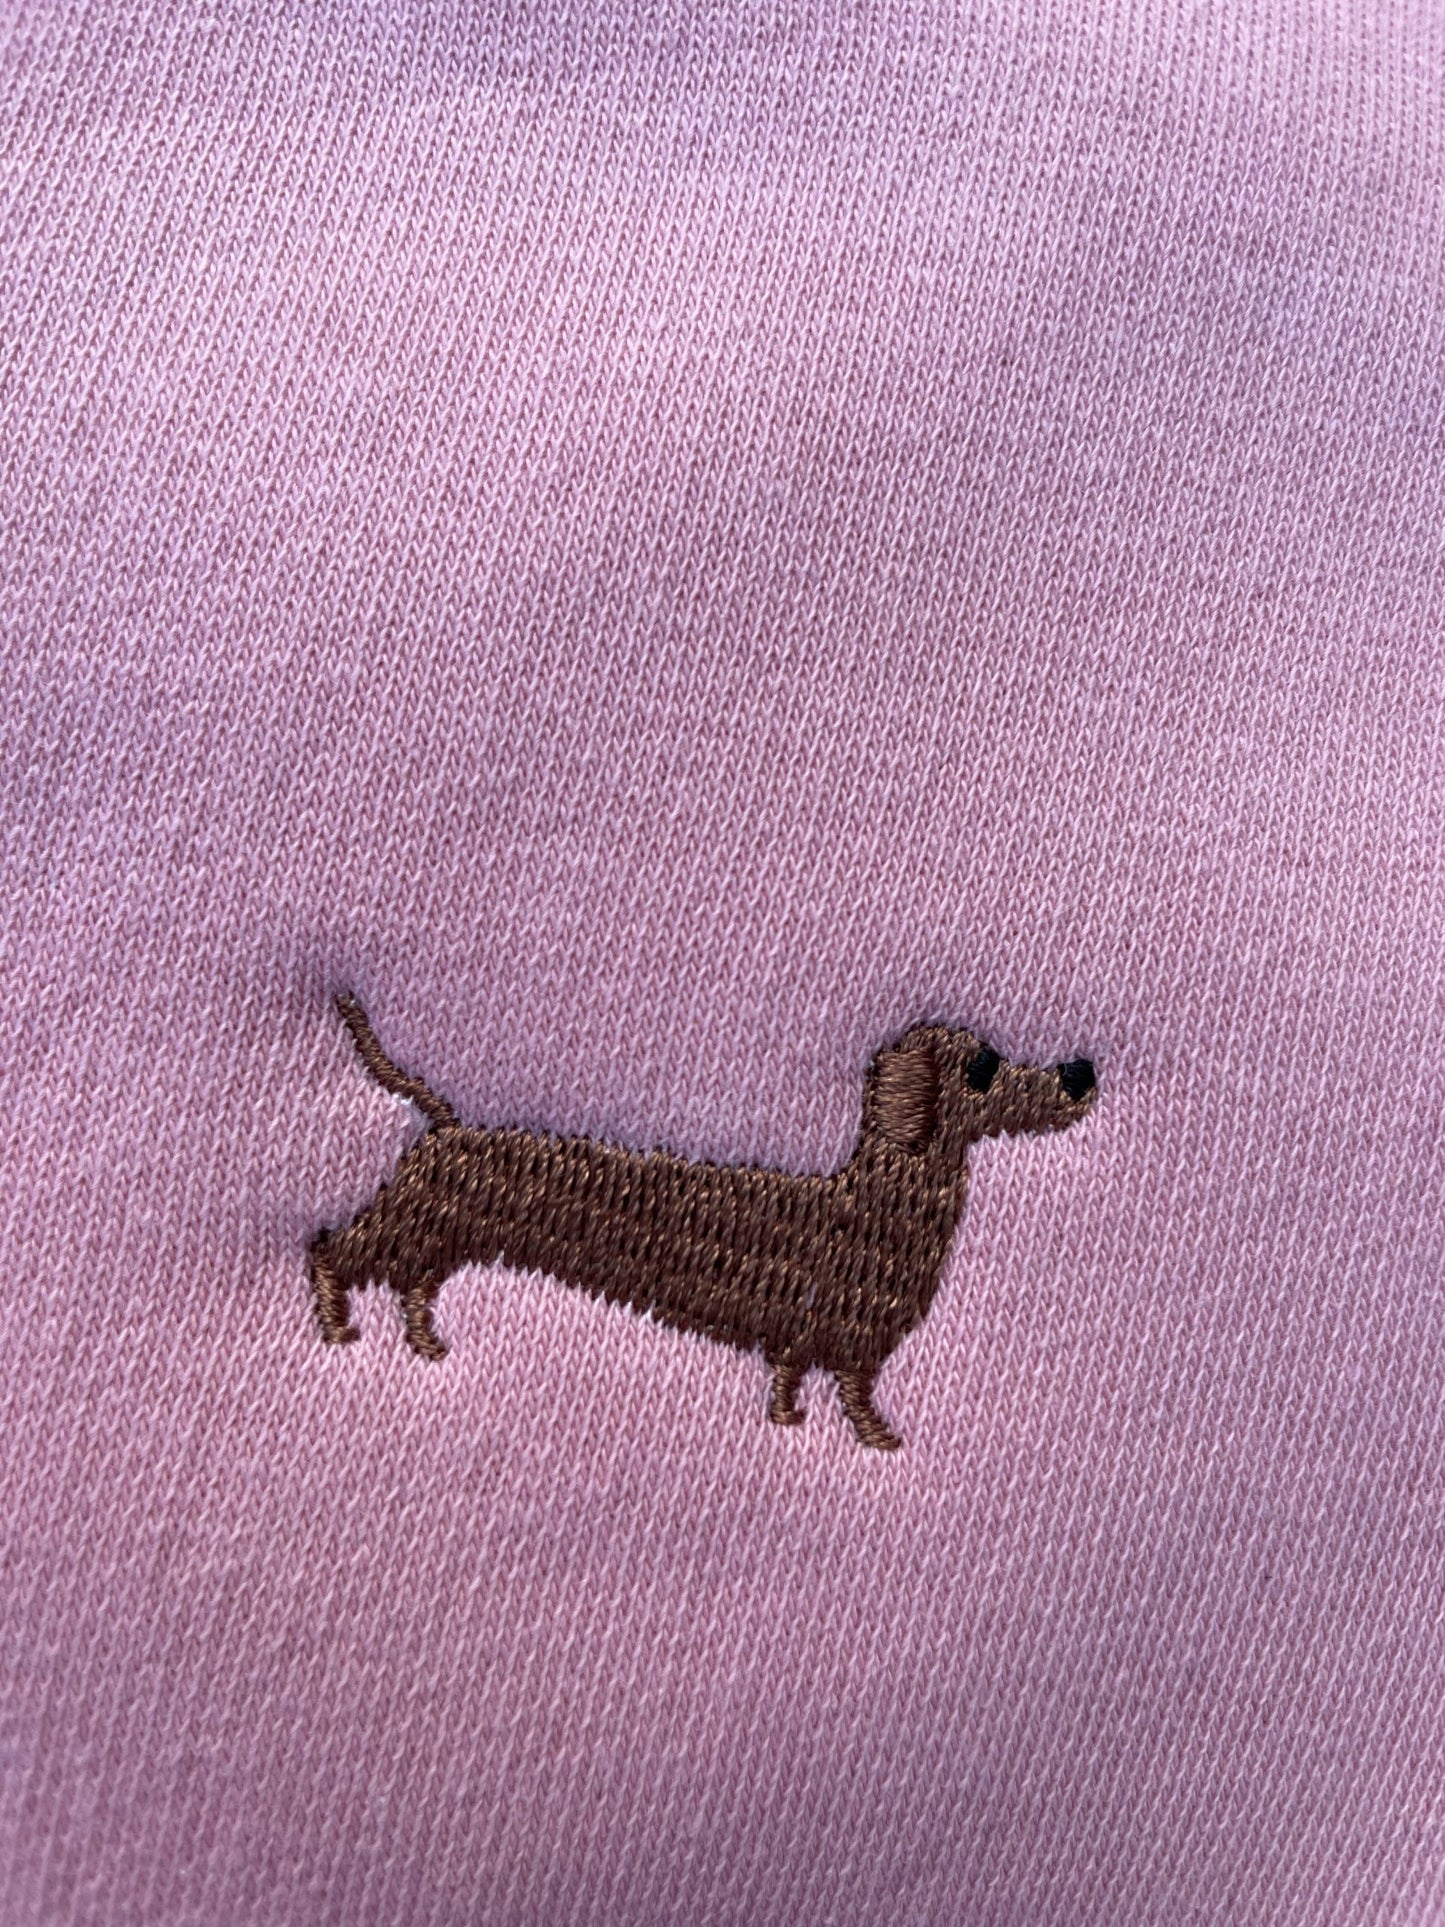 Sweatshirt mit Dackel-Stick - tierly-Kollektion - Bekleidung & Accessoires